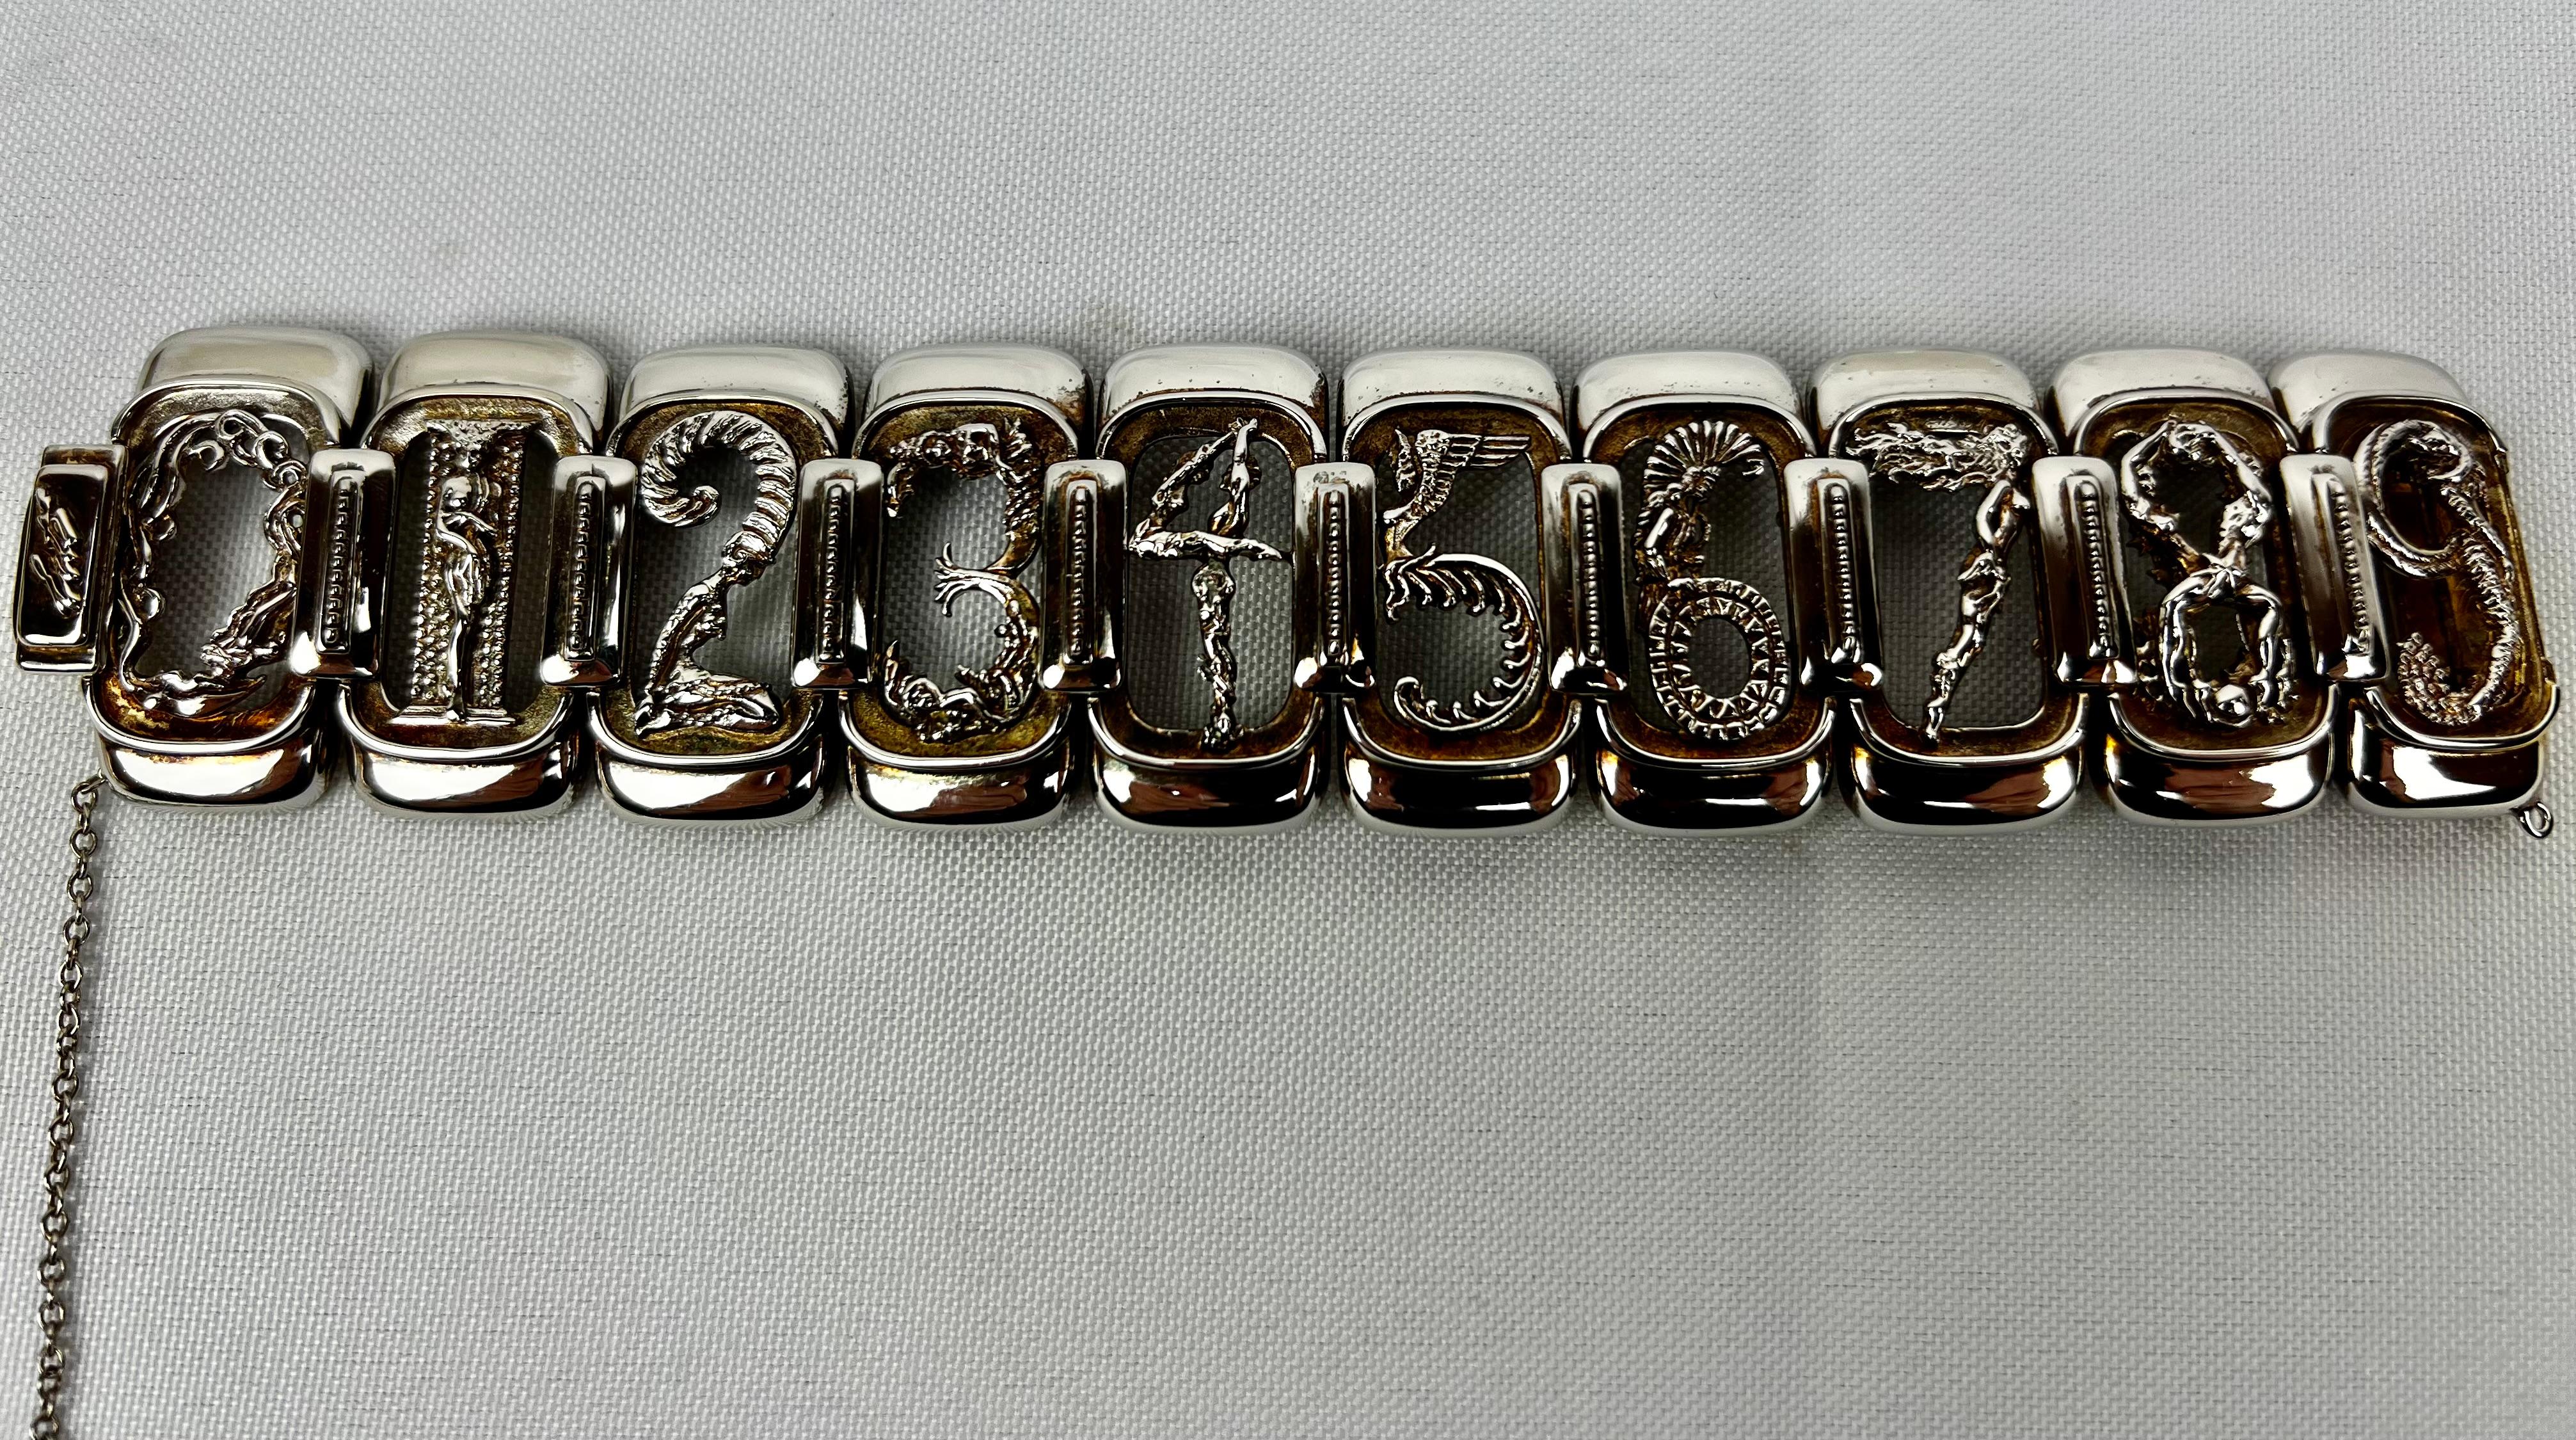 Erté  (1892-1990) Armband aus Sterlingsilber und Vermeil mit figuralen Zahlen, hergestellt für Circle Fine Art Galleries.
Die Glieder 0 bis 9 stehen jeweils für eine weibliche Form.  Das Armband hat einen Kastenverschluss und eine Sicherheitskette